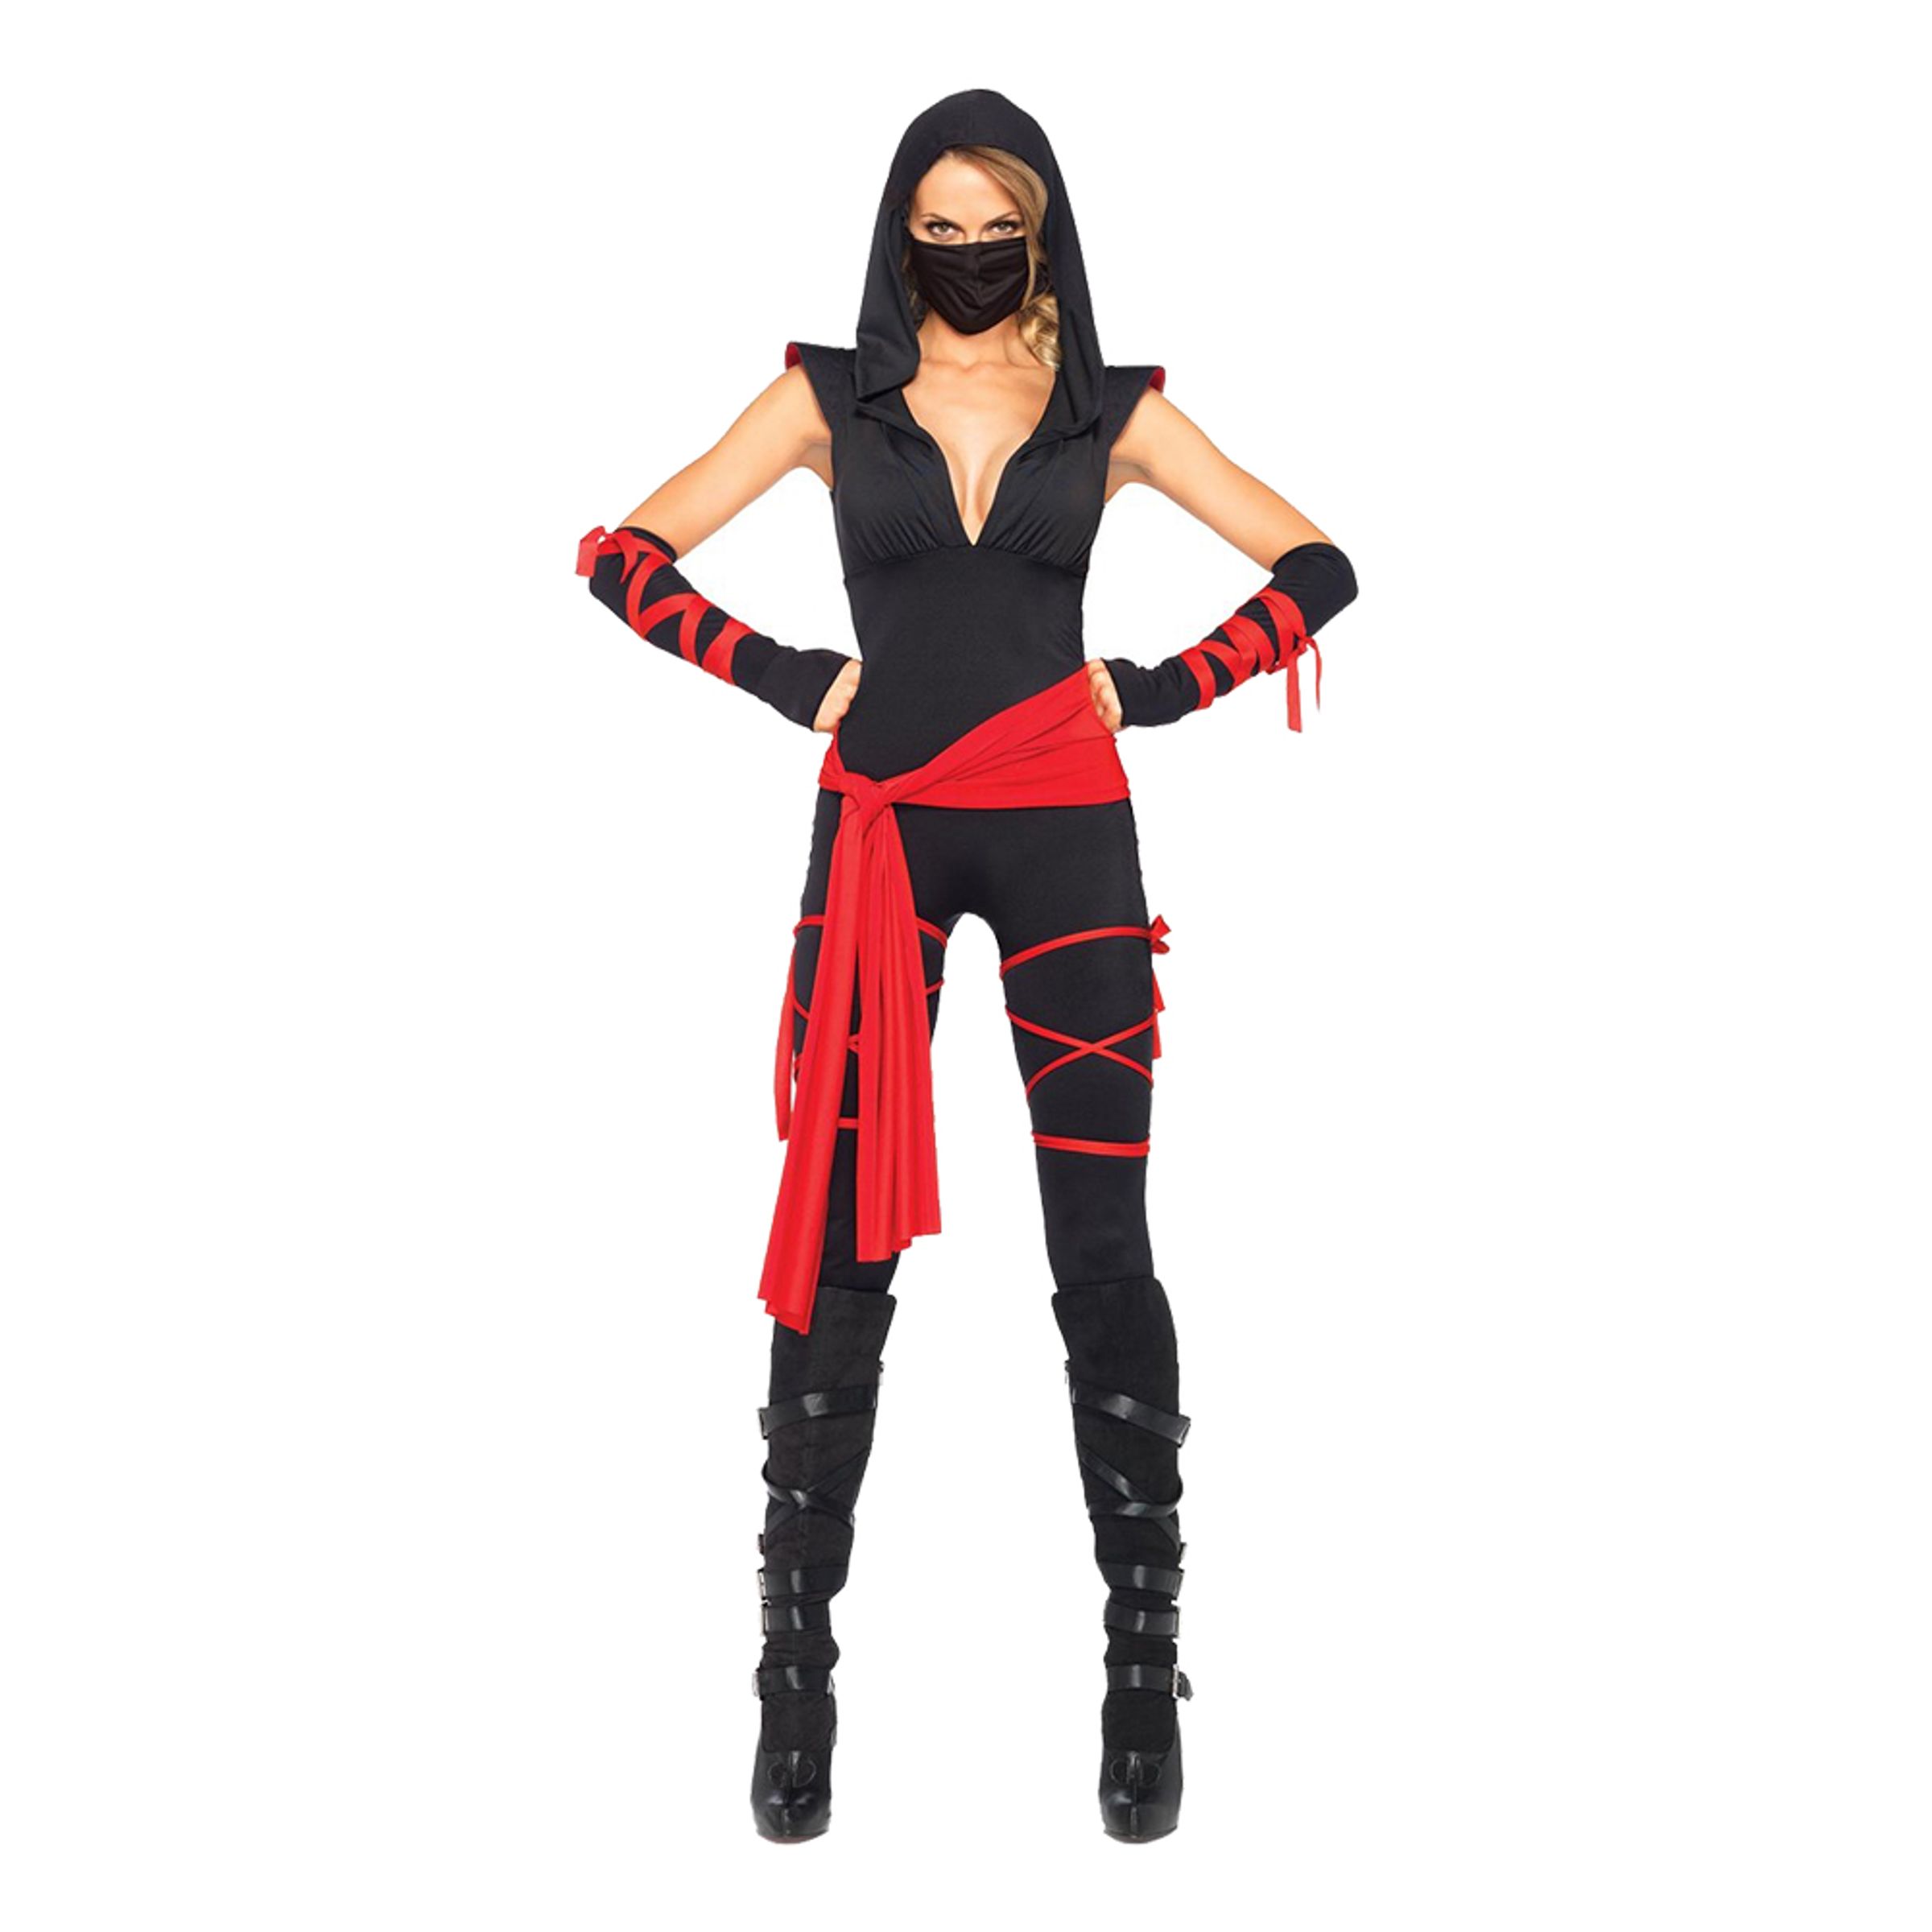 Kvinnlig Ninja Deluxe Maskeraddräkt - Small